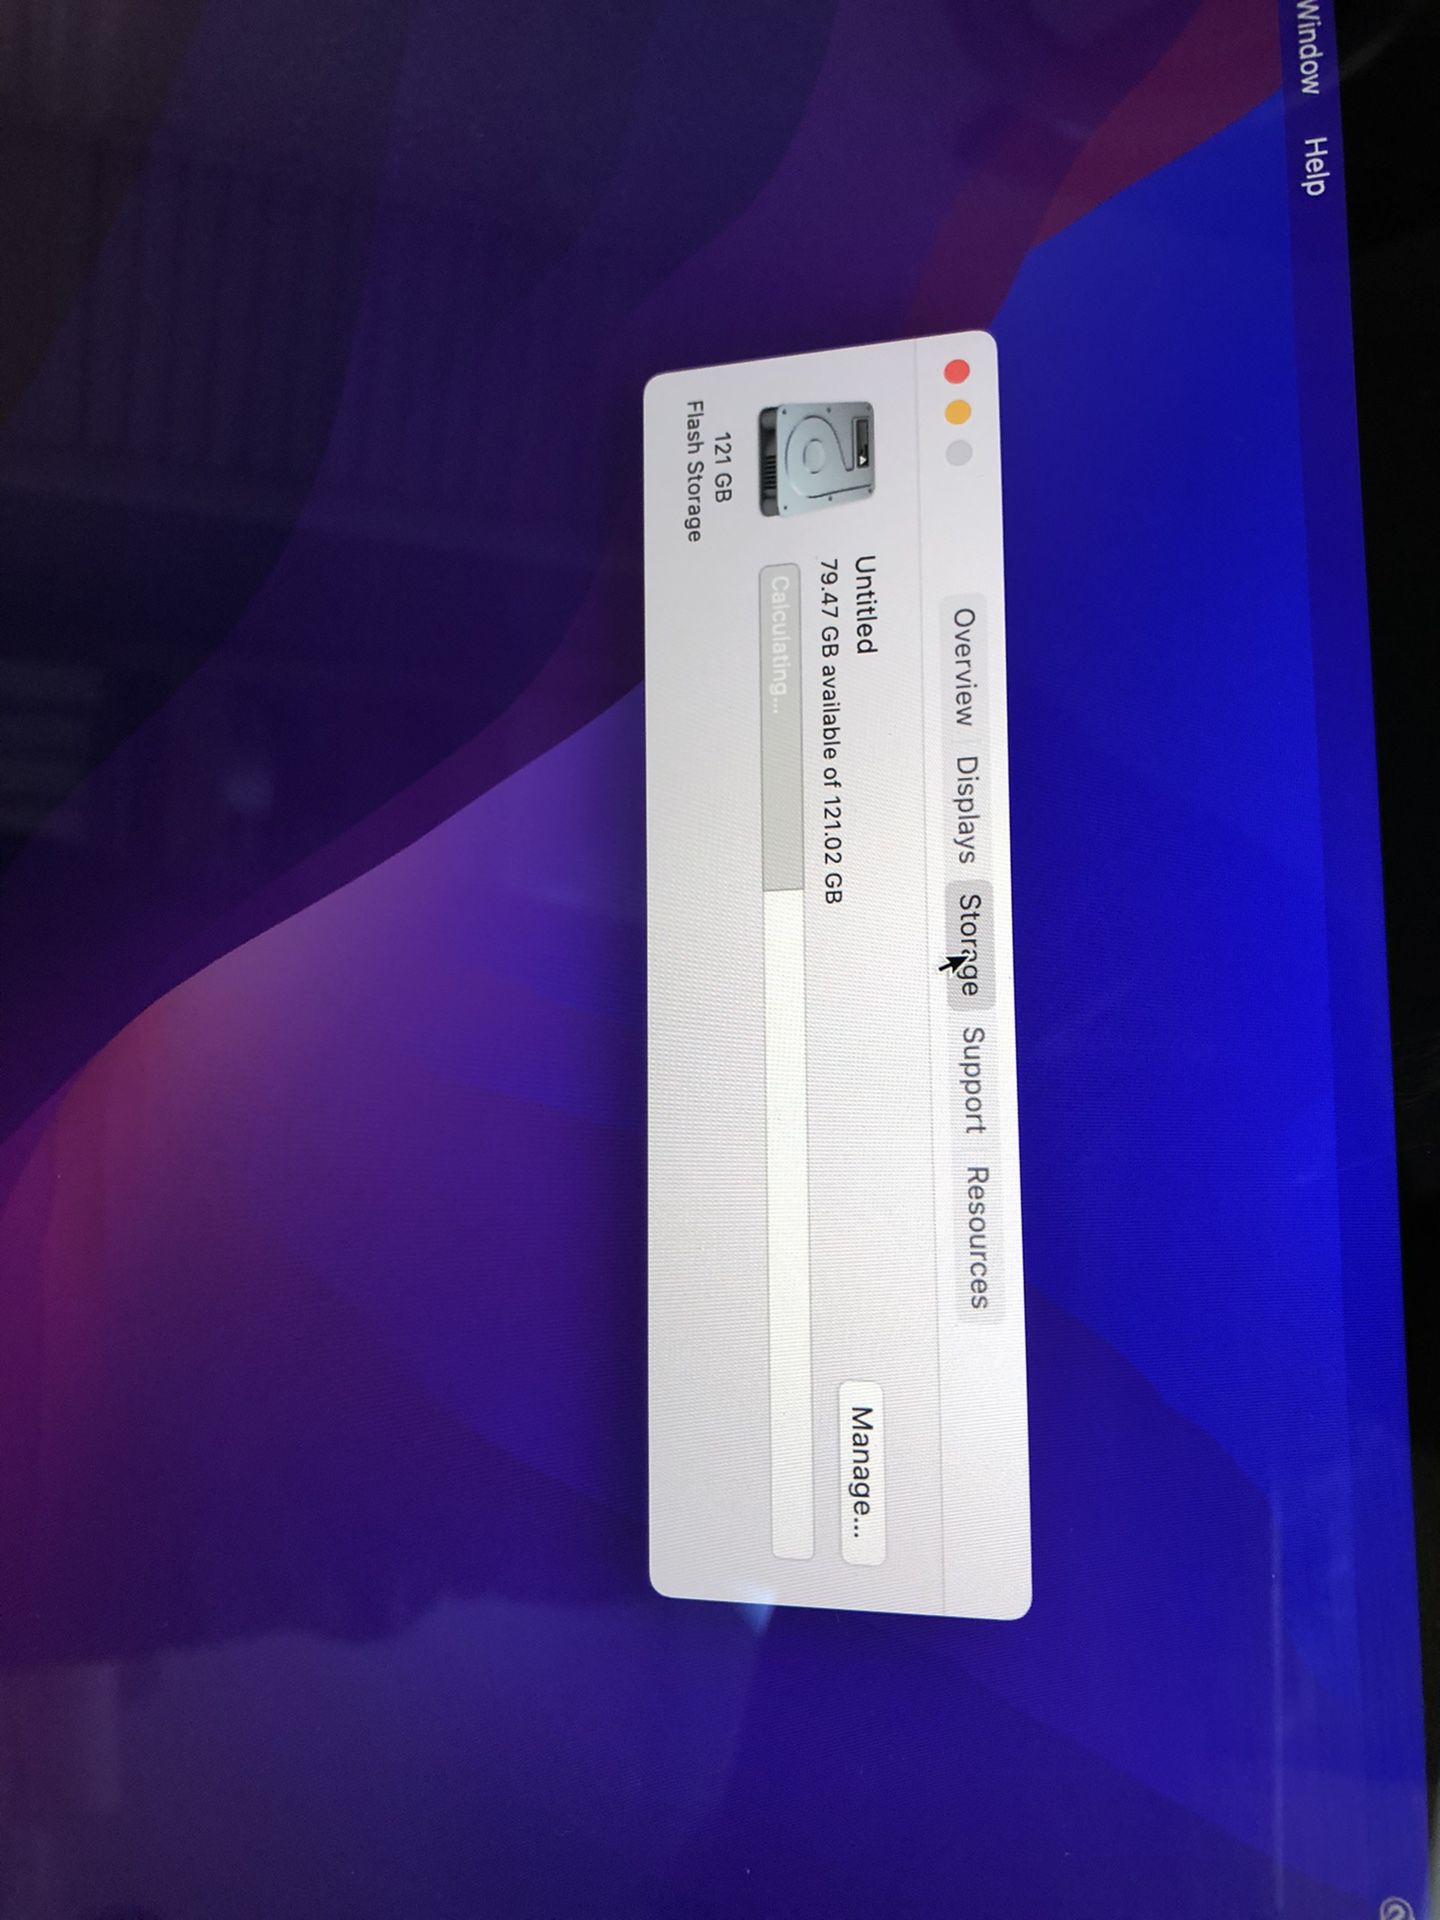 MacBook Pro 2019 With TouchBar 